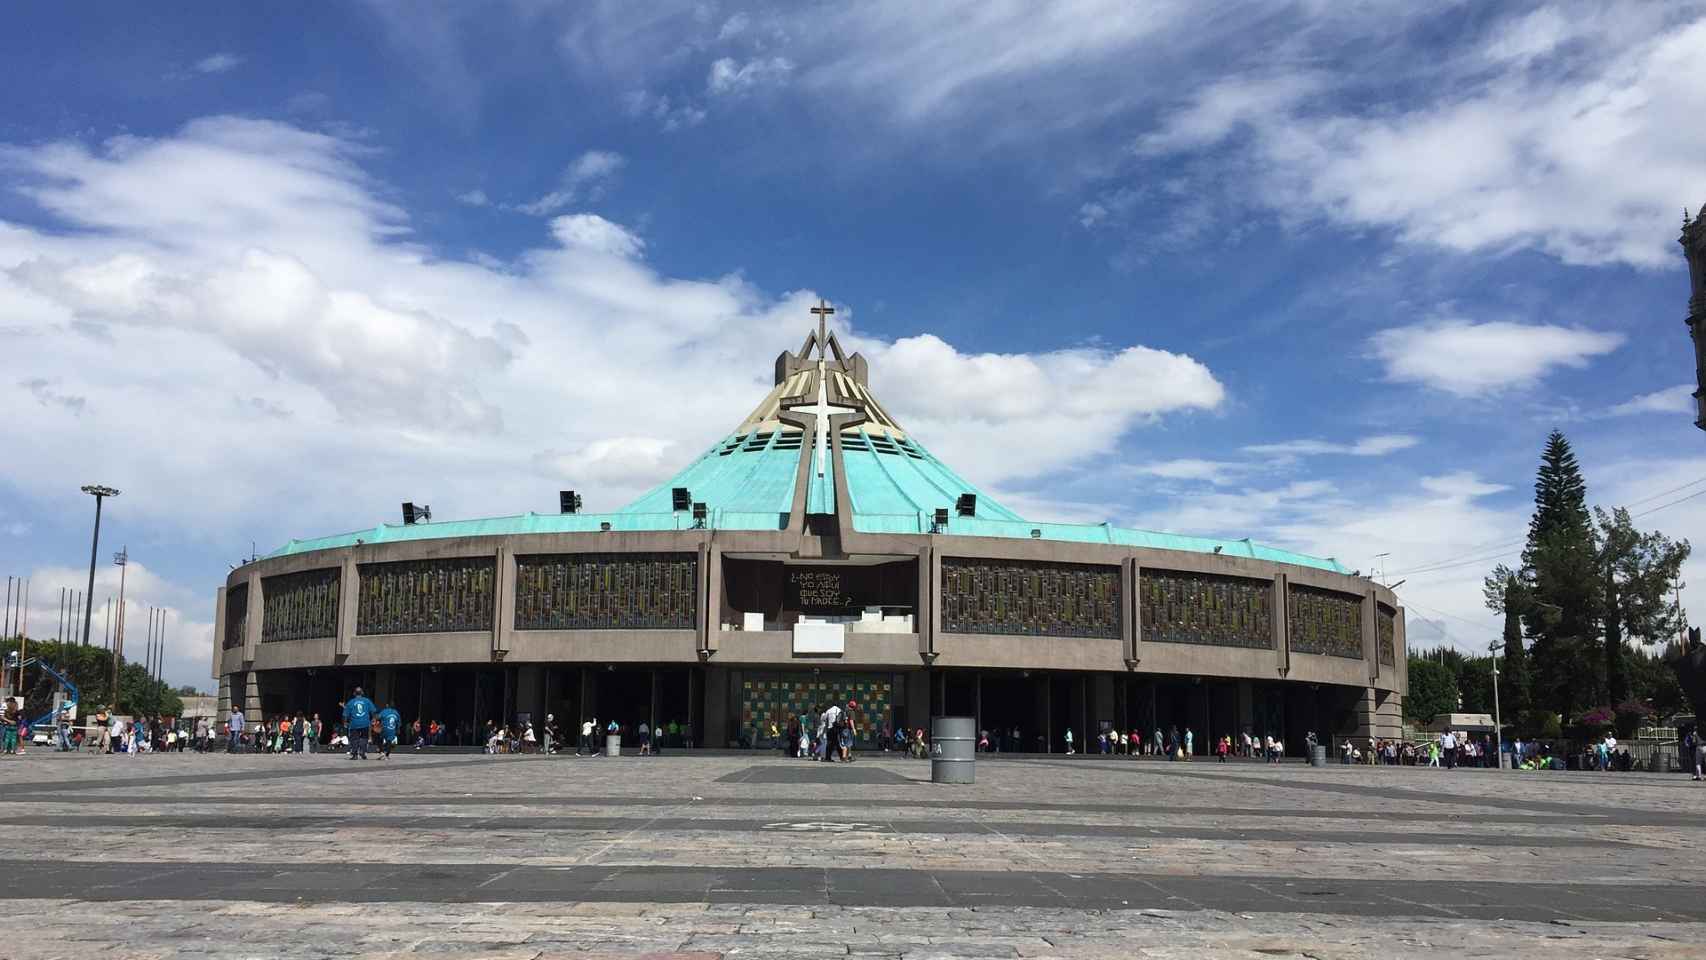 Ciudad de México.